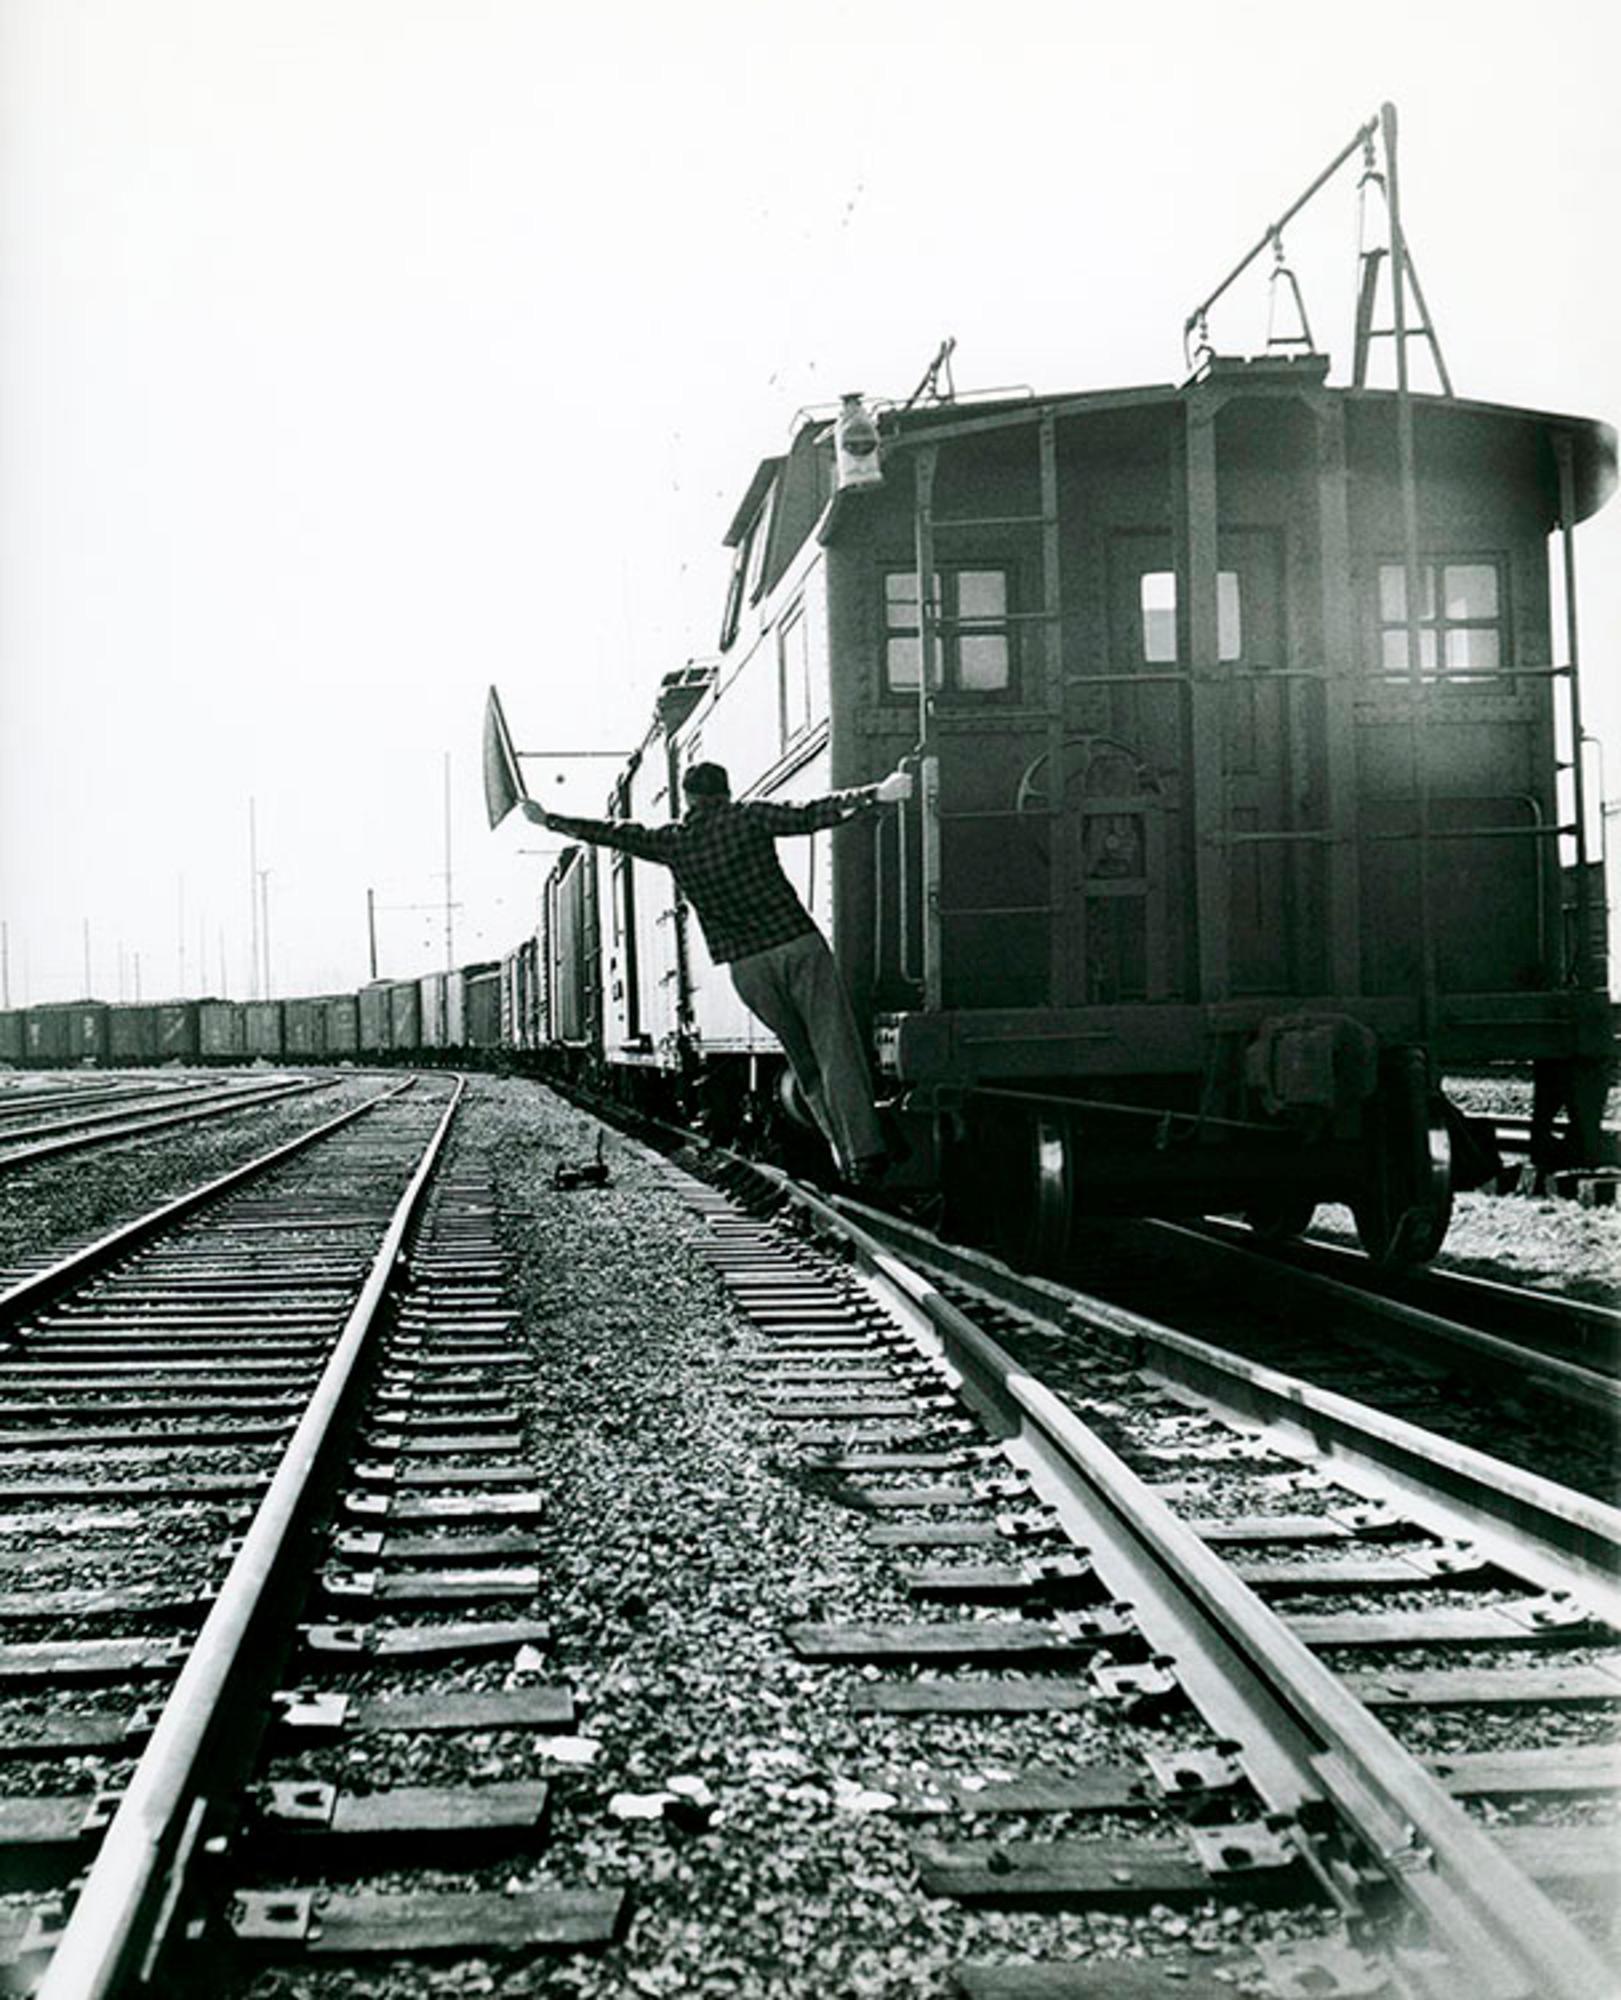 Lawrence Fried - Railway Signalman NYC, photographie de 1951, imprimée d'après